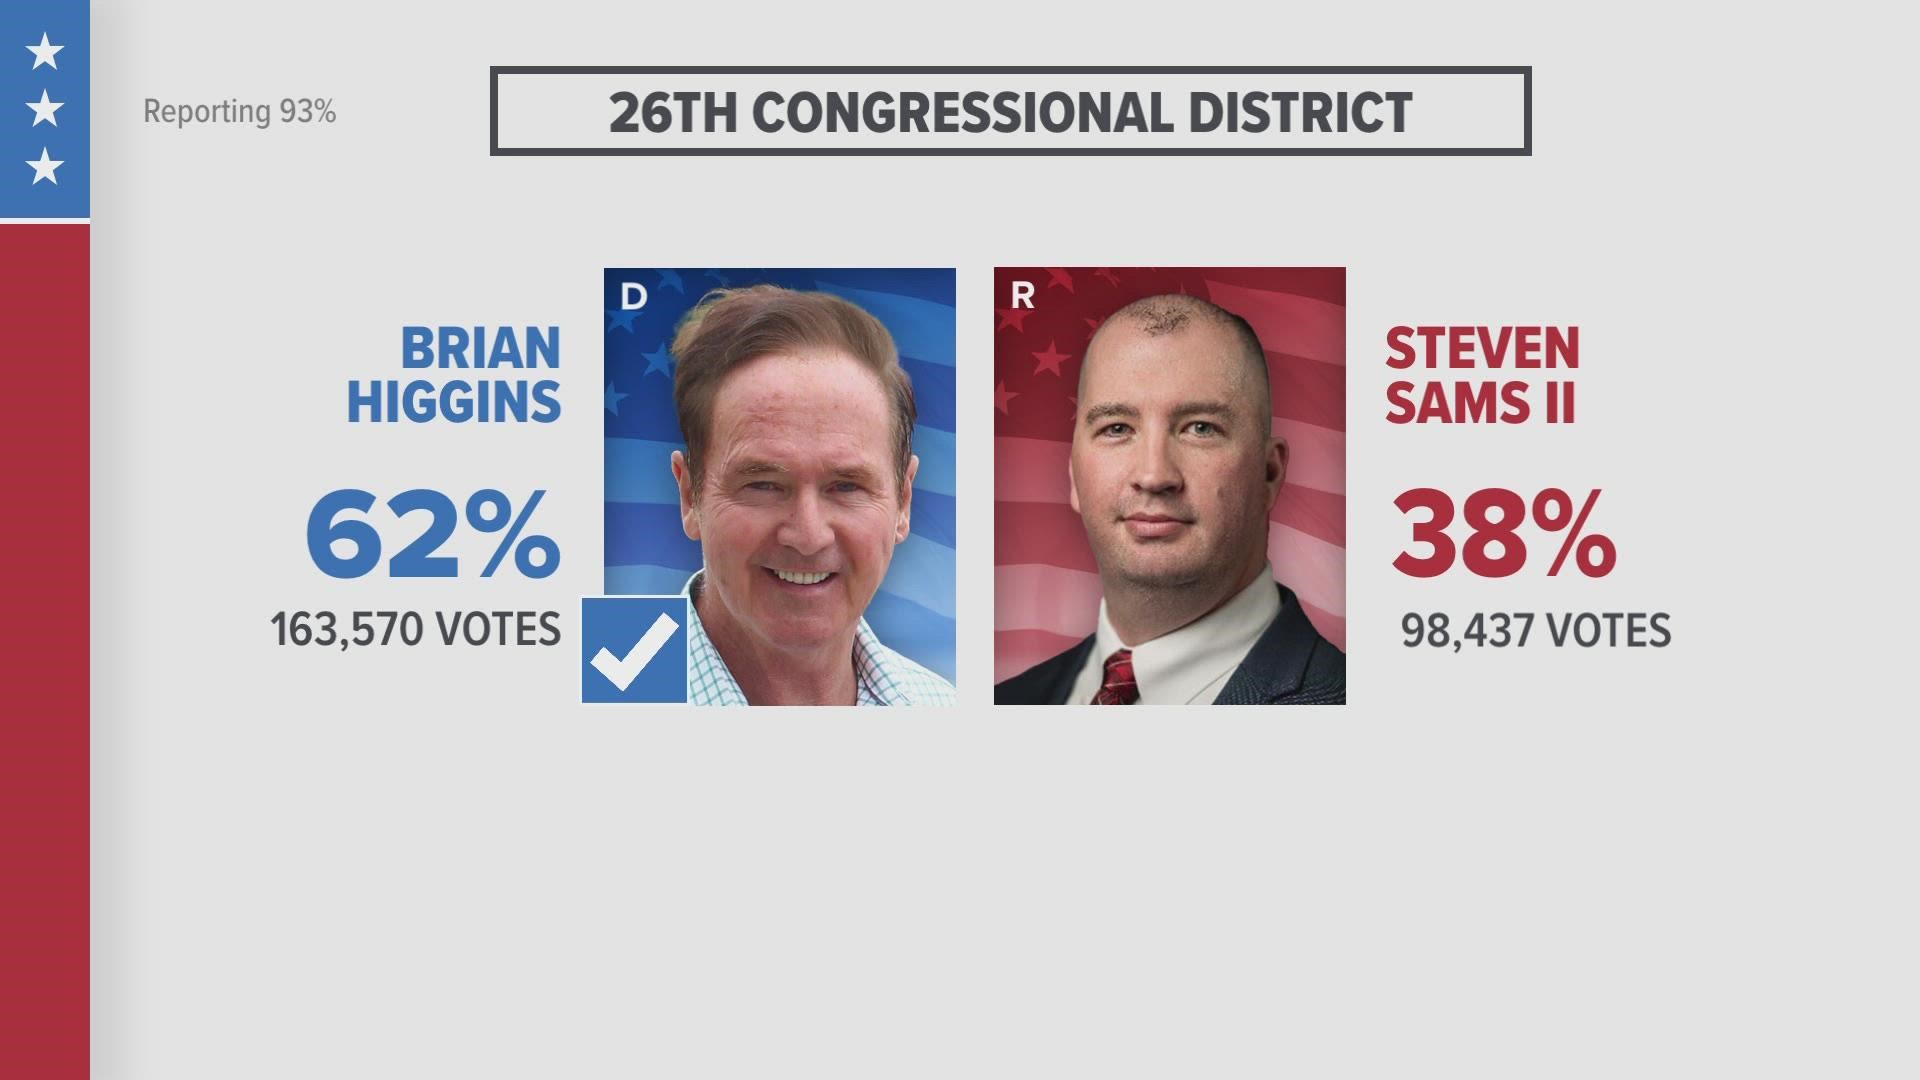 Higgins leads opponent Steven Sams II 62% to 38%.